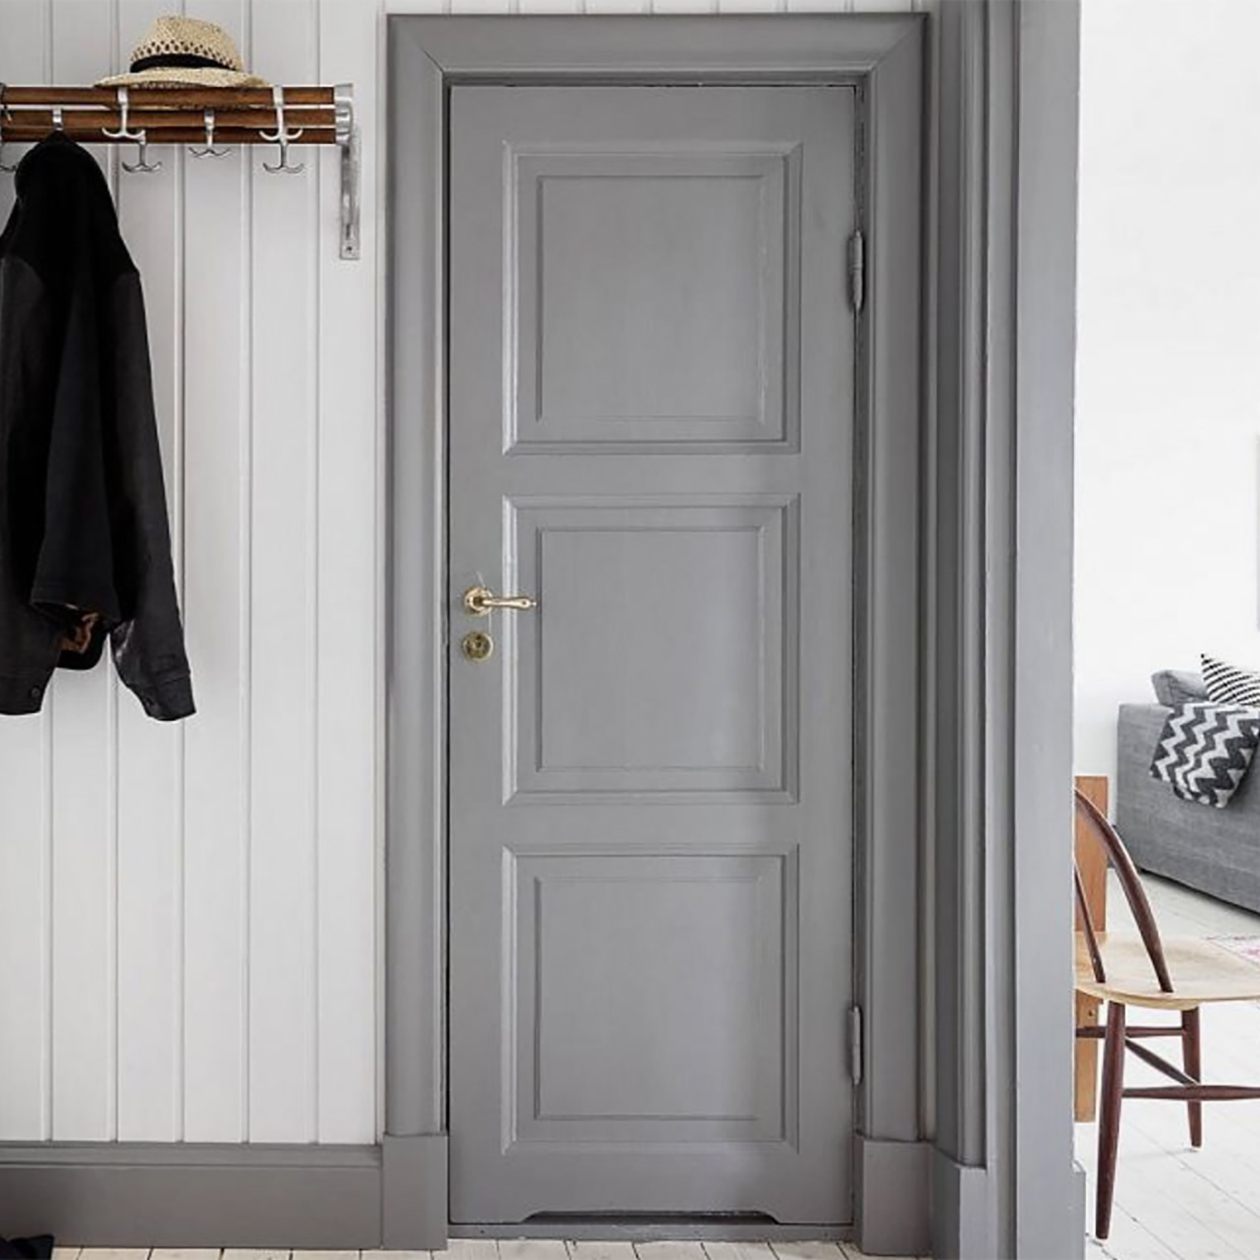 В скандинавском интерьере часто устанавливают филенчатые двери с равными квадратами, на фото их три. Фотография: planete-deco.fr